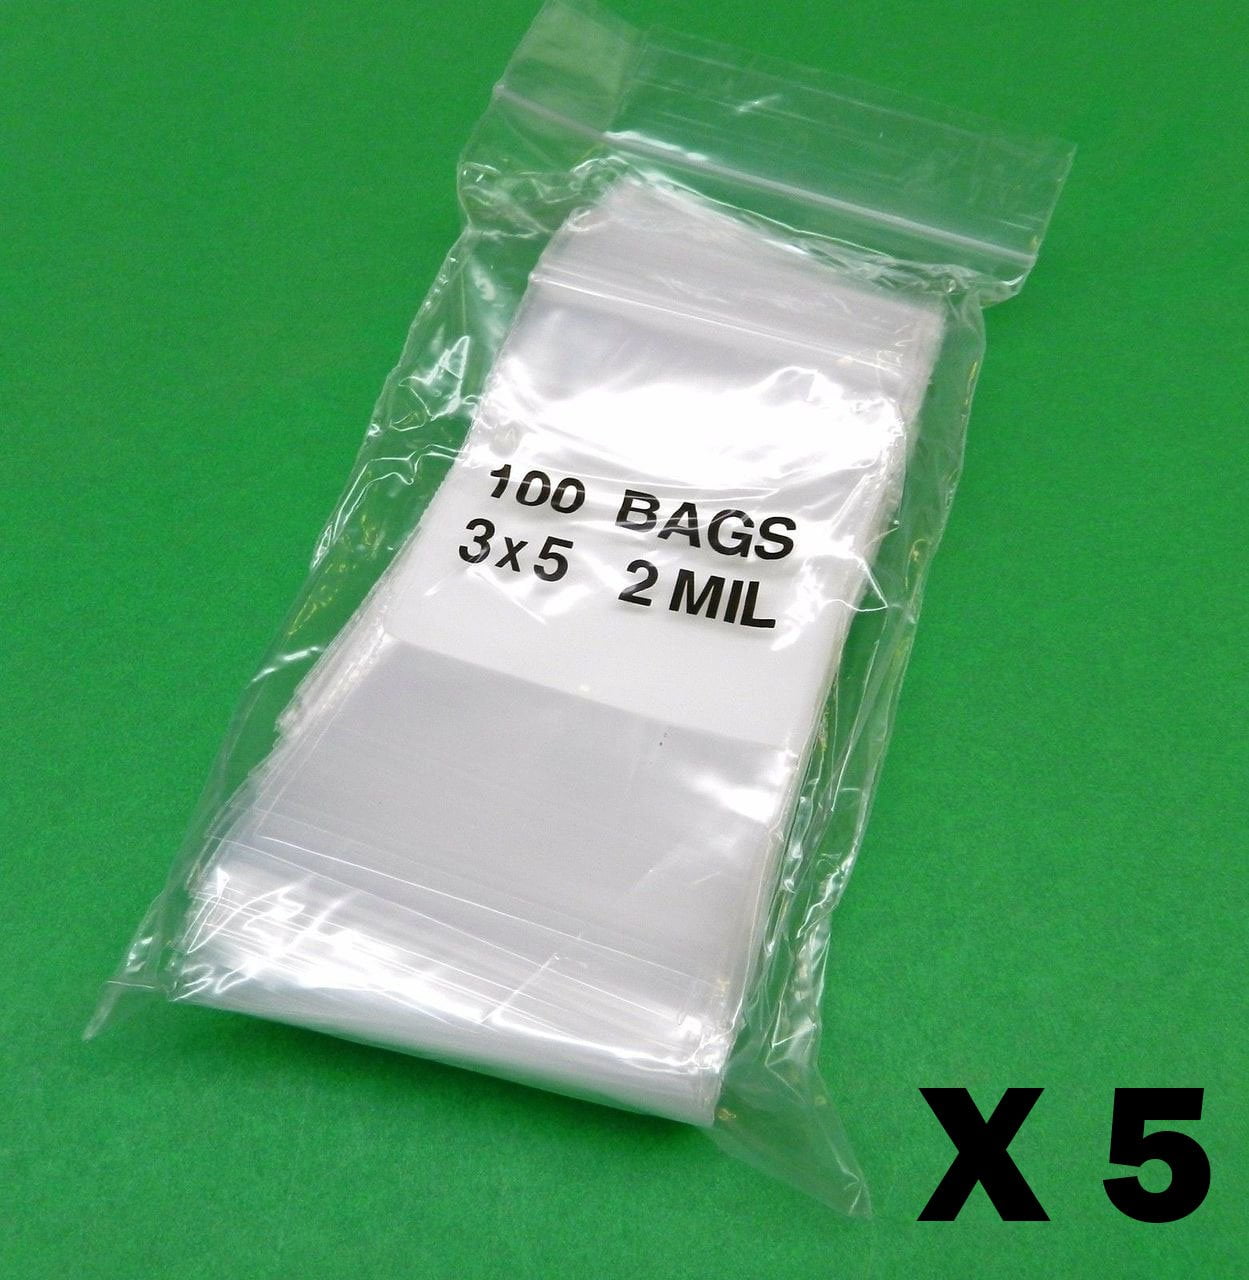 3x5 Mini Zip Lock Plastic Bags 3" x 5" 2 Mil Clear Reclosable Storage Bag 2000 